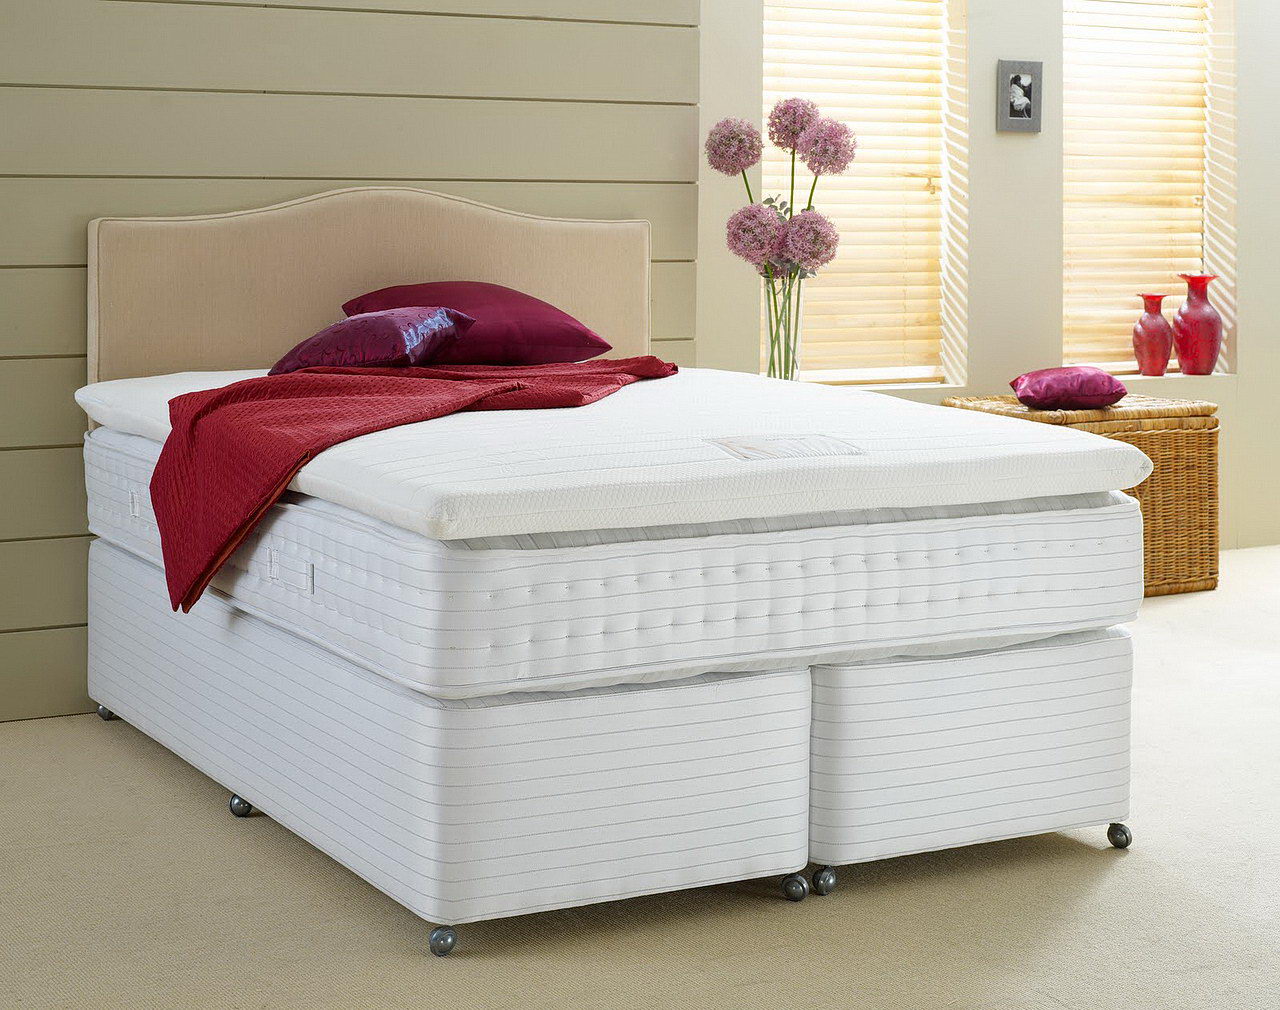 mattress types latex foam